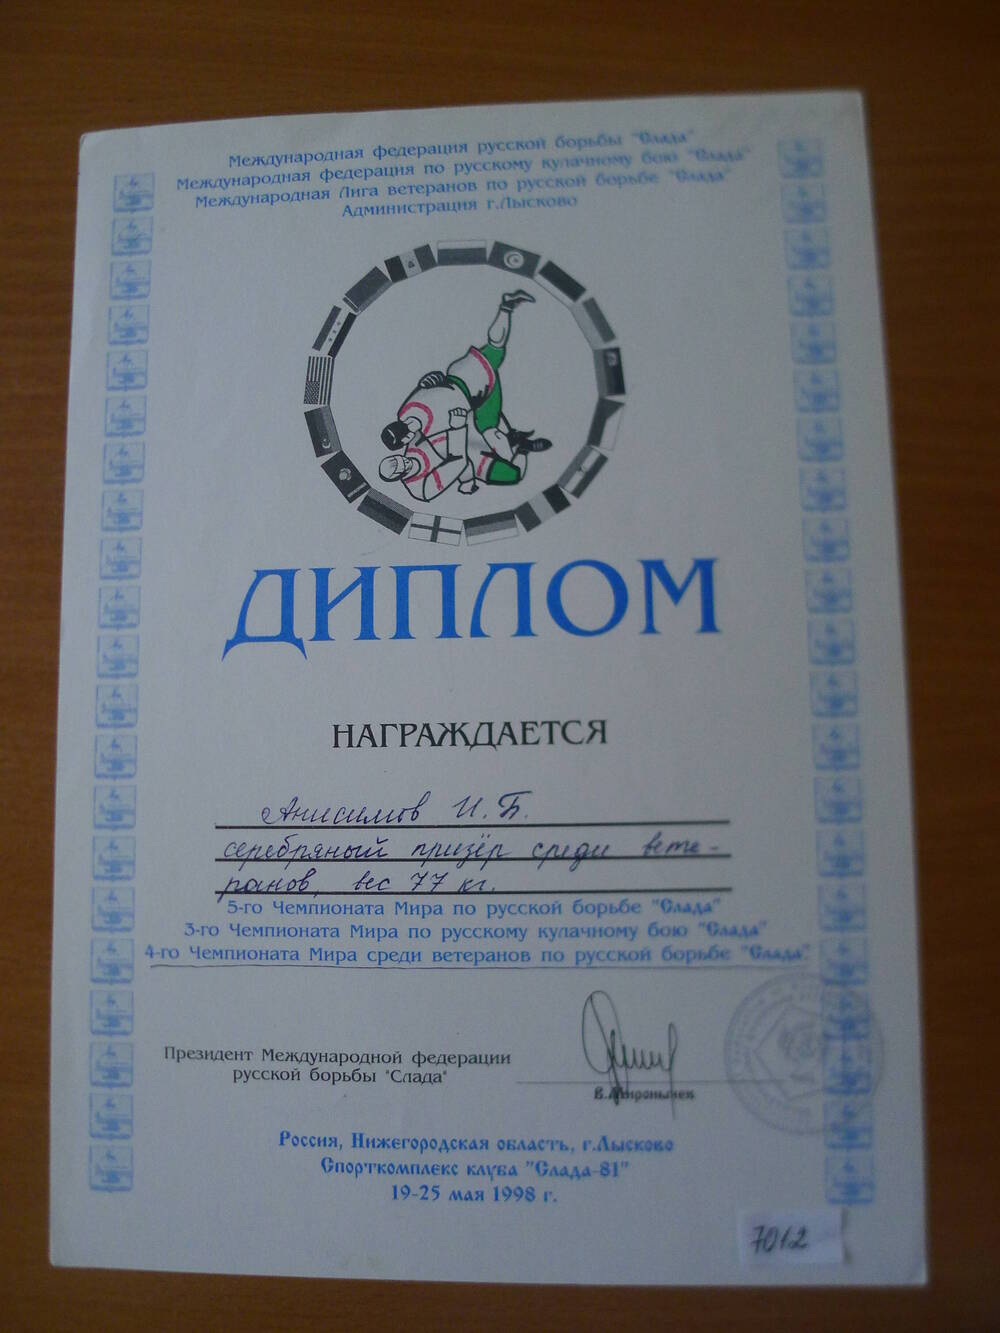 Диплом Анисимова И.Б. серебряного призера среди ветеранов по борьбе  Слада.1998